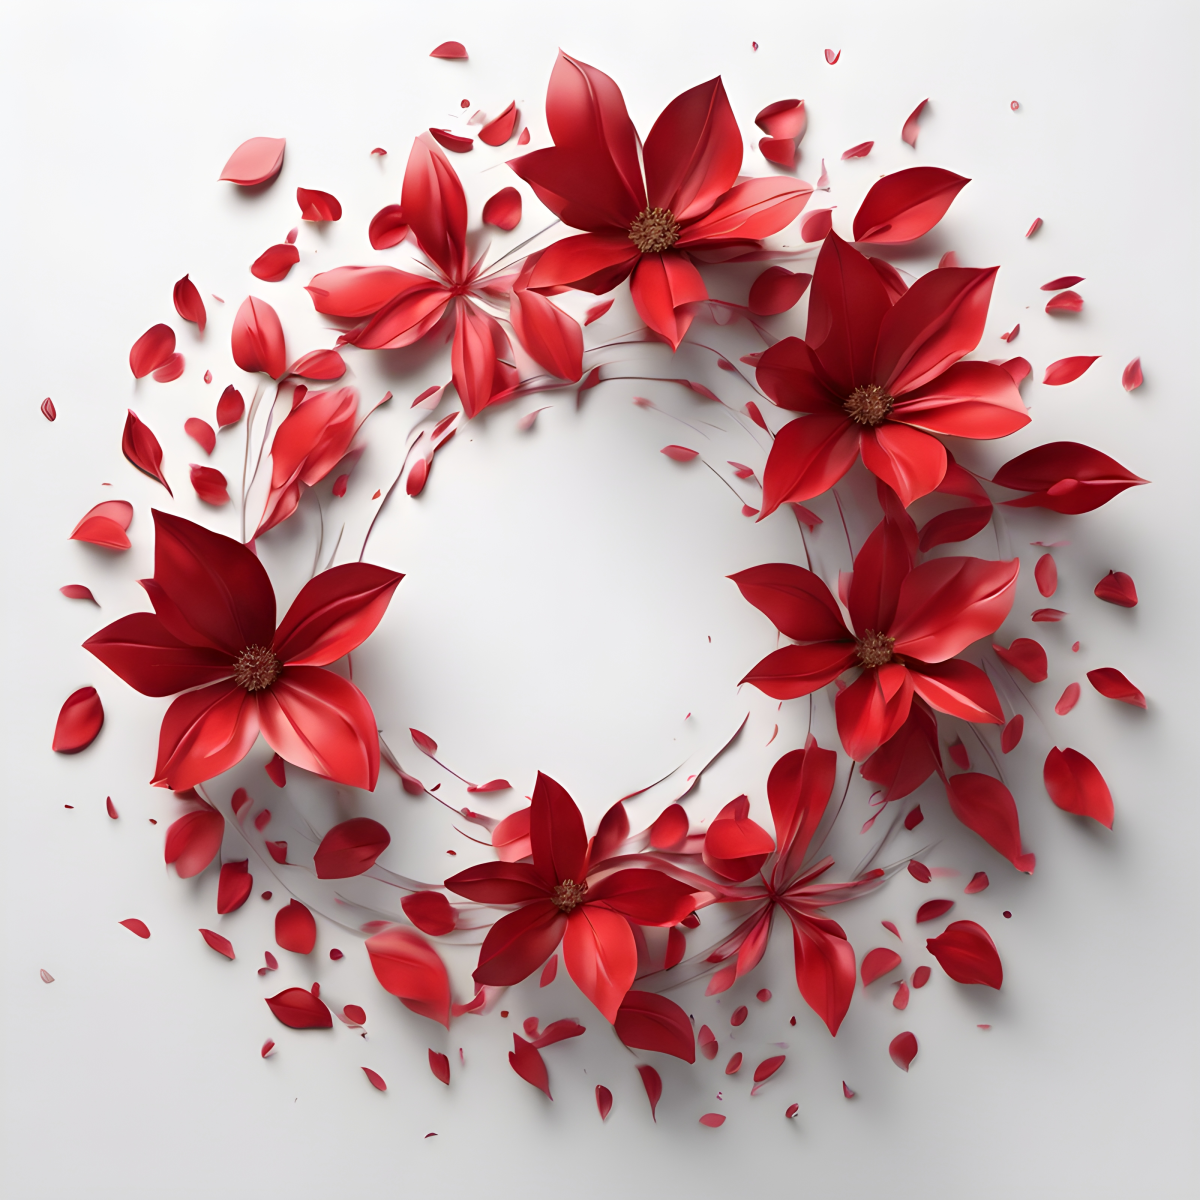 กลีบดอกไม้สีแดงหมุนเป็นวงกลม ภาพสมจริง ภาพประกอบกราฟิก รายละเอียดสูง พื้นหลังสตูดิโอสีขาว